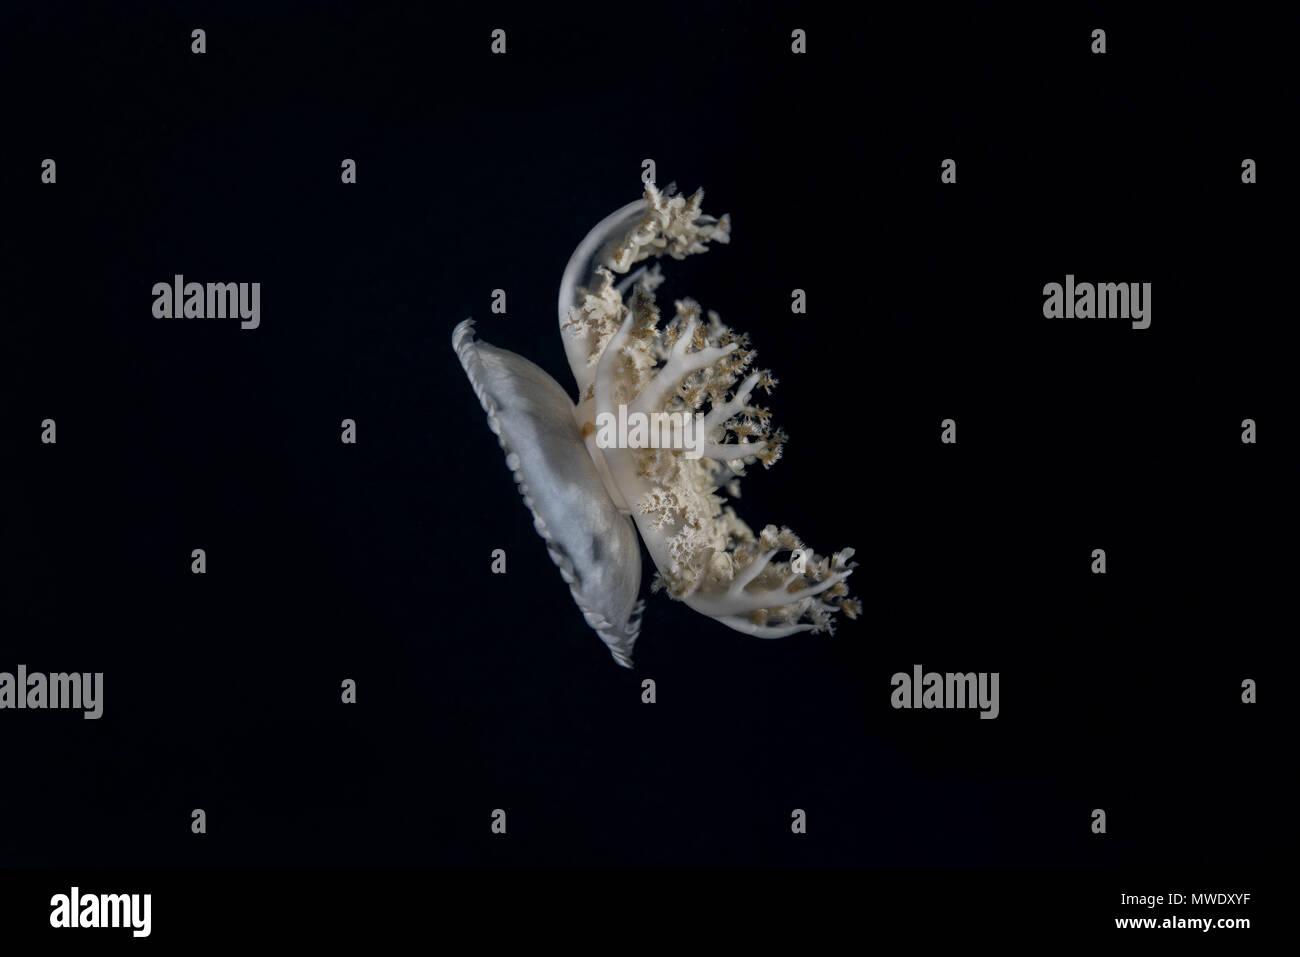 Indischer Ozean, Malediven. 21 Mär, 2018. Kopfüber Quallen (Cassiopea Andromeda) in der Nacht Kreditkarten: Andrey Nekrasov/ZUMA Draht/ZUMAPRESS.com/Alamy leben Nachrichten Stockfoto